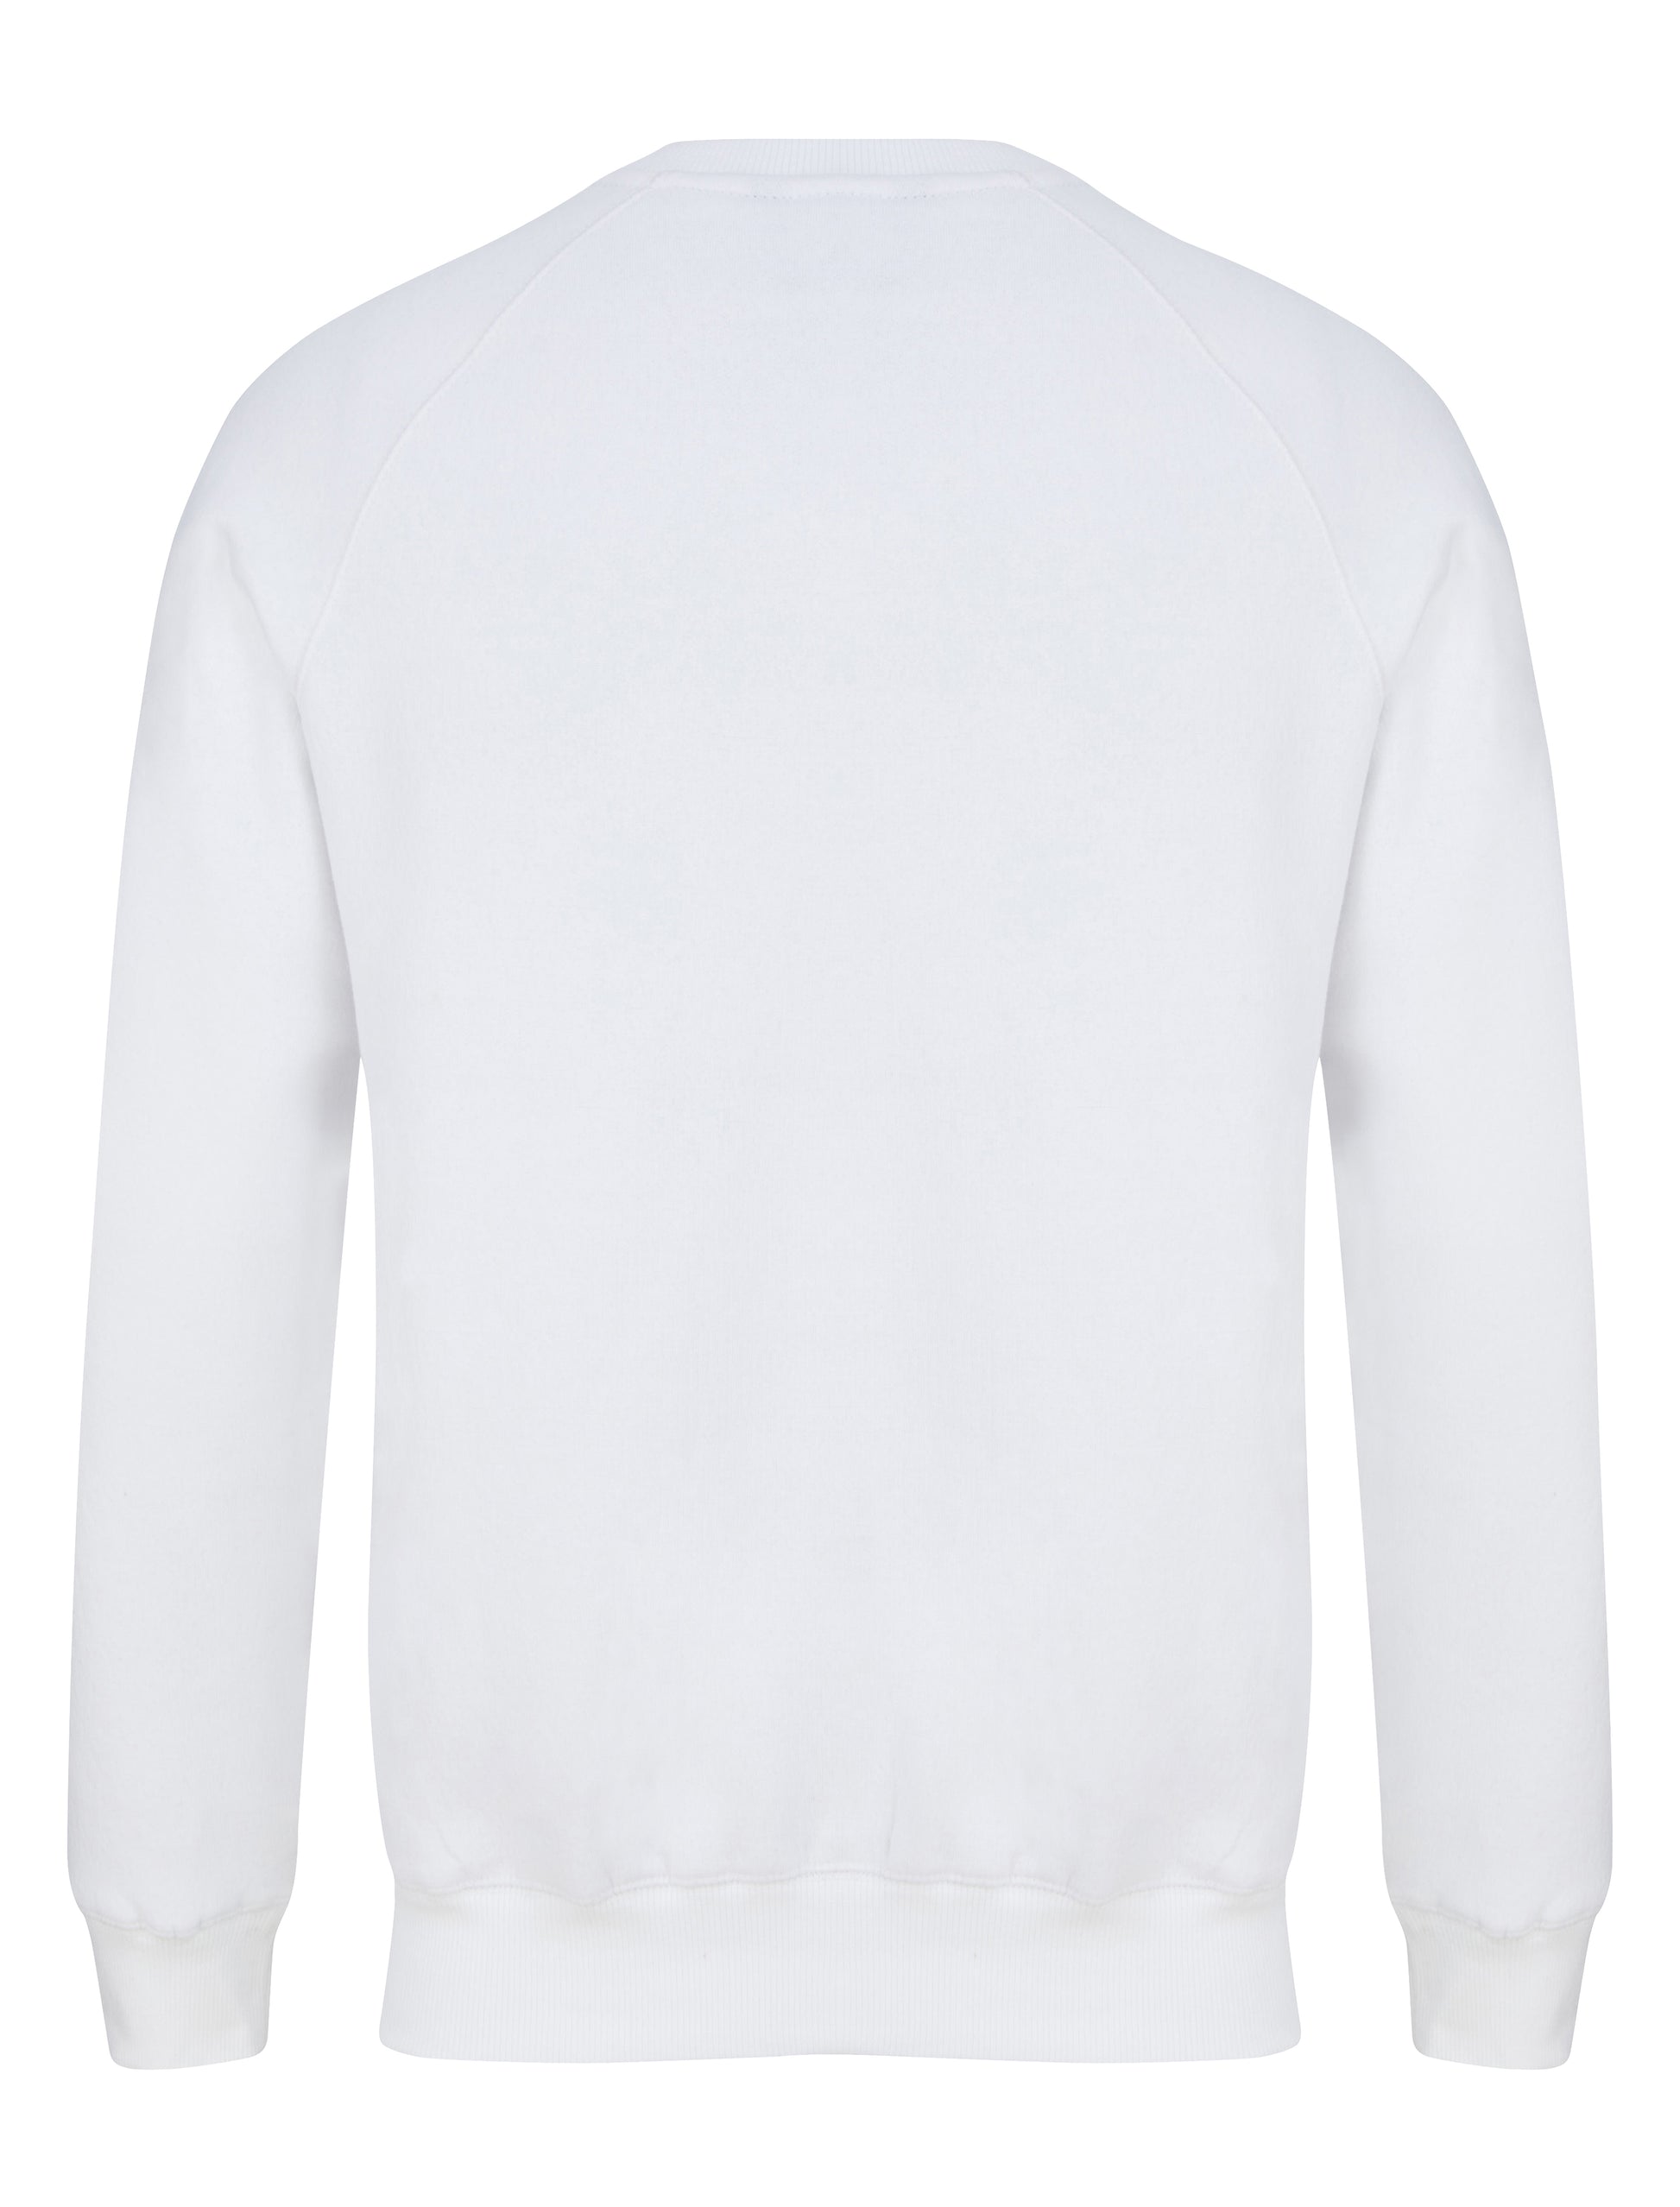 Sweatshirt white Back Yungnrich 